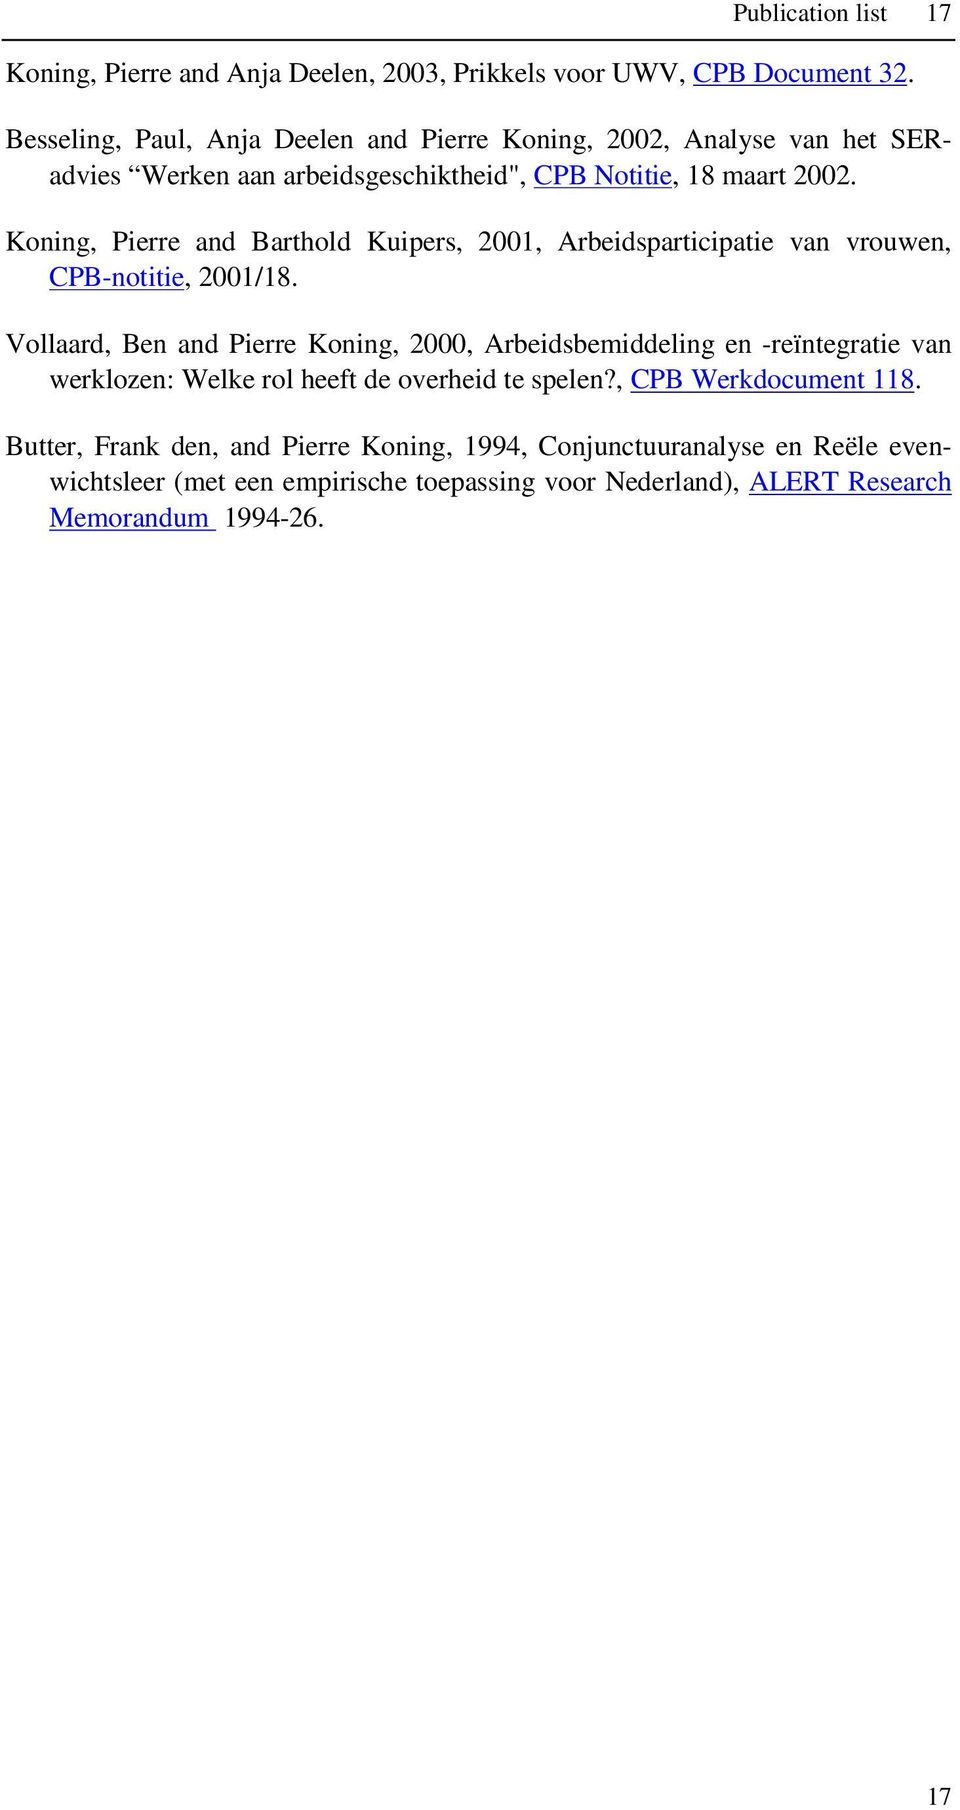 Koning, Pierre and Barthold Kuipers, 2001, Arbeidsparticipatie van vrouwen, CPB-notitie, 2001/18.